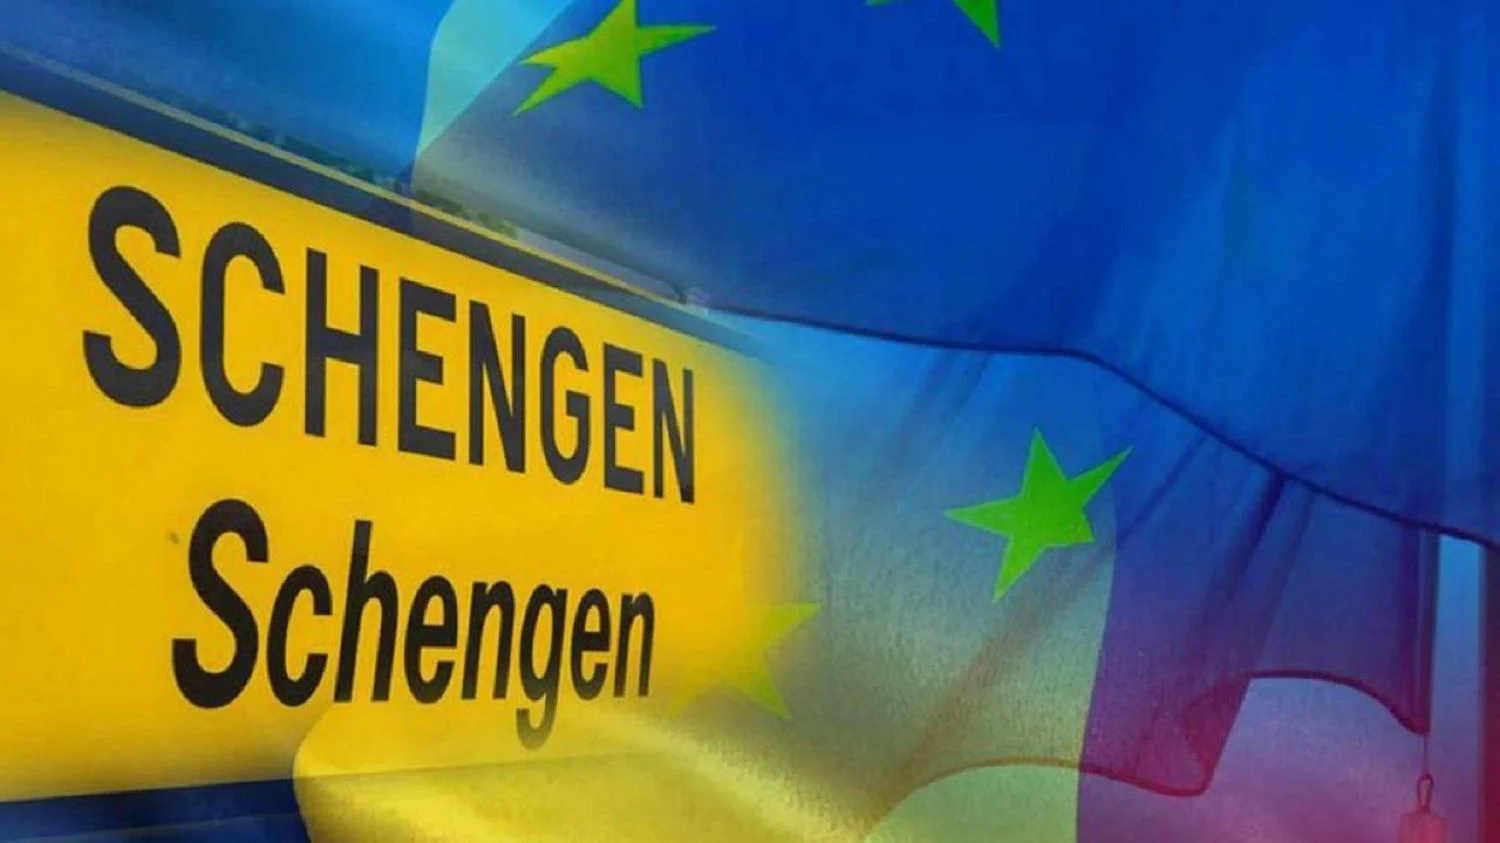 România în Schengen şi cu graniţele terestre. Mesajul care ne dă speranțe